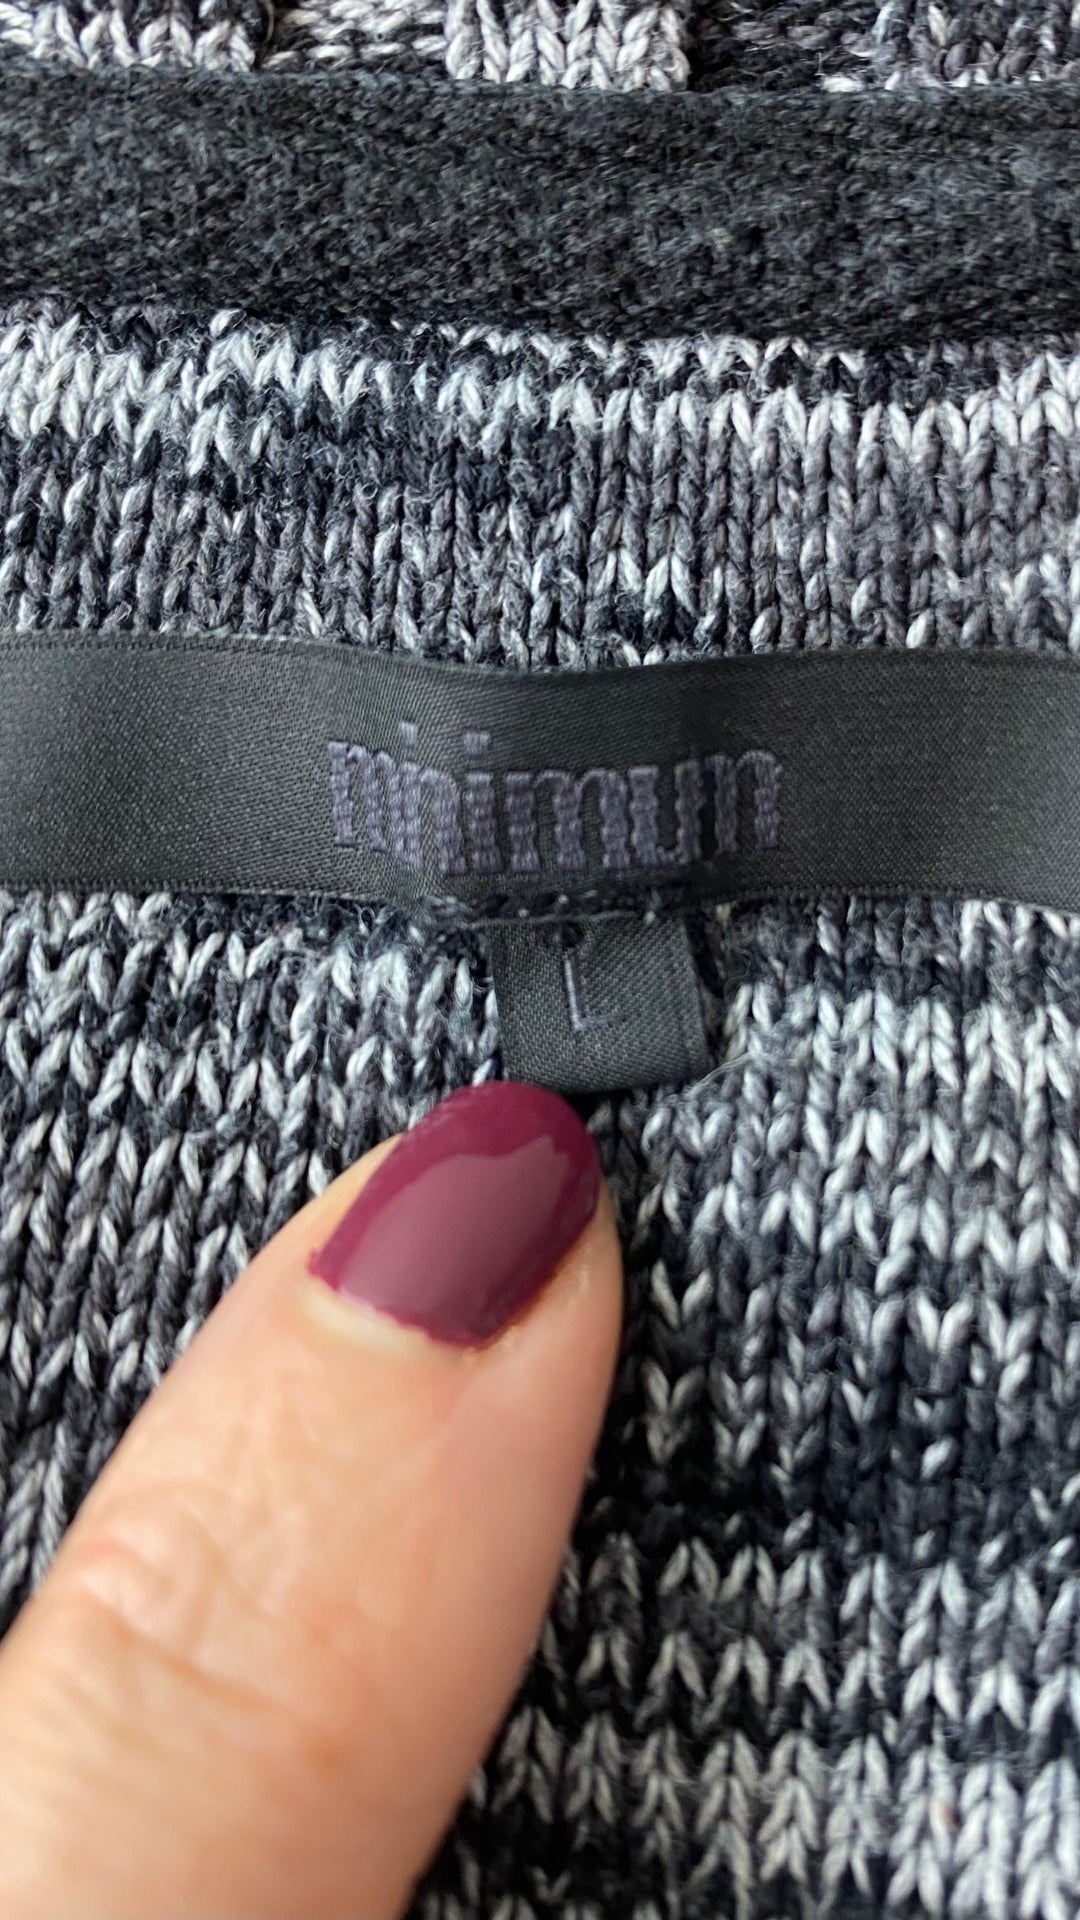 Chandail tricot col rond chiné Minimum, taille large. Vue de l'étiquette de marque et taille.